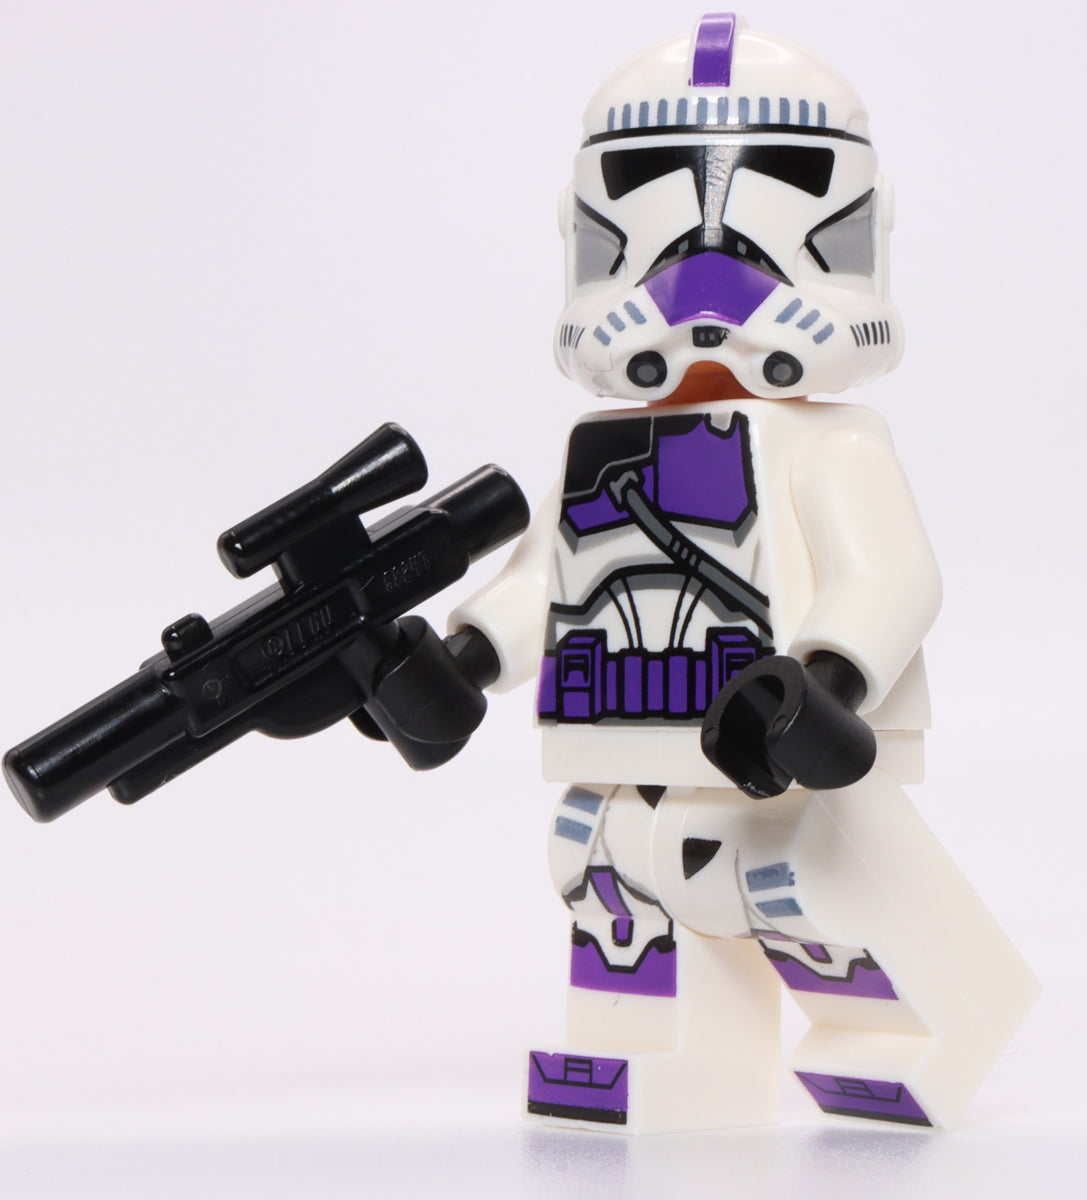 Lego Star Wars 187th Legion Clone Trooper Minifig with Blaster Gun